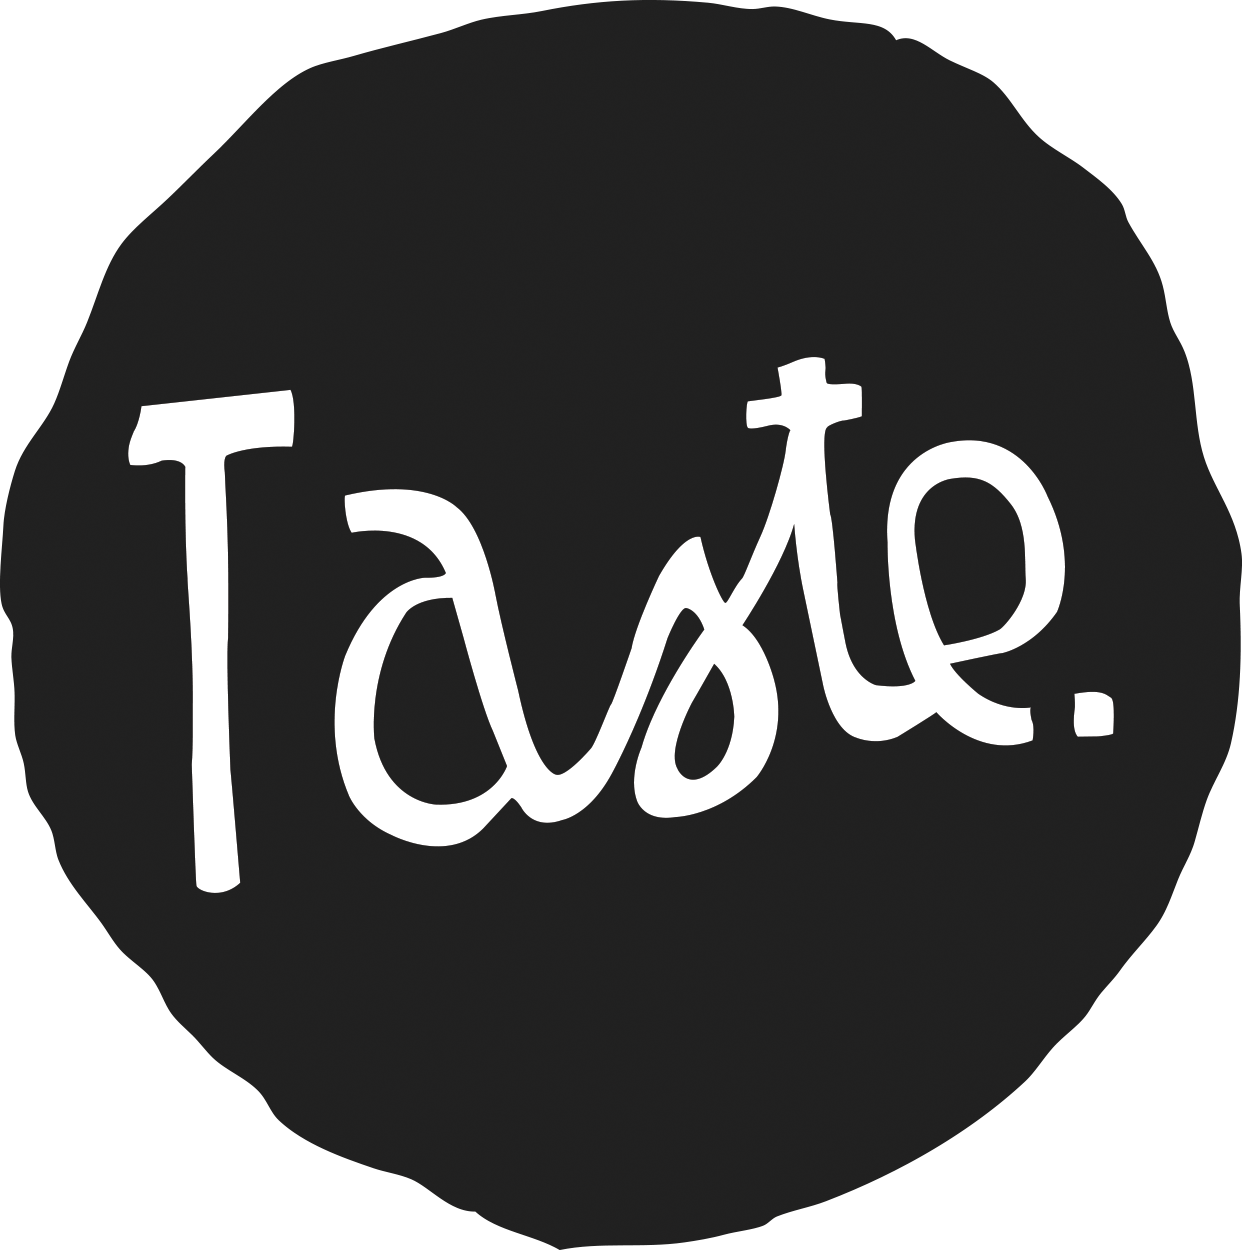 Taste. Вкус надпись. Taste надпись. Надпись taste it.